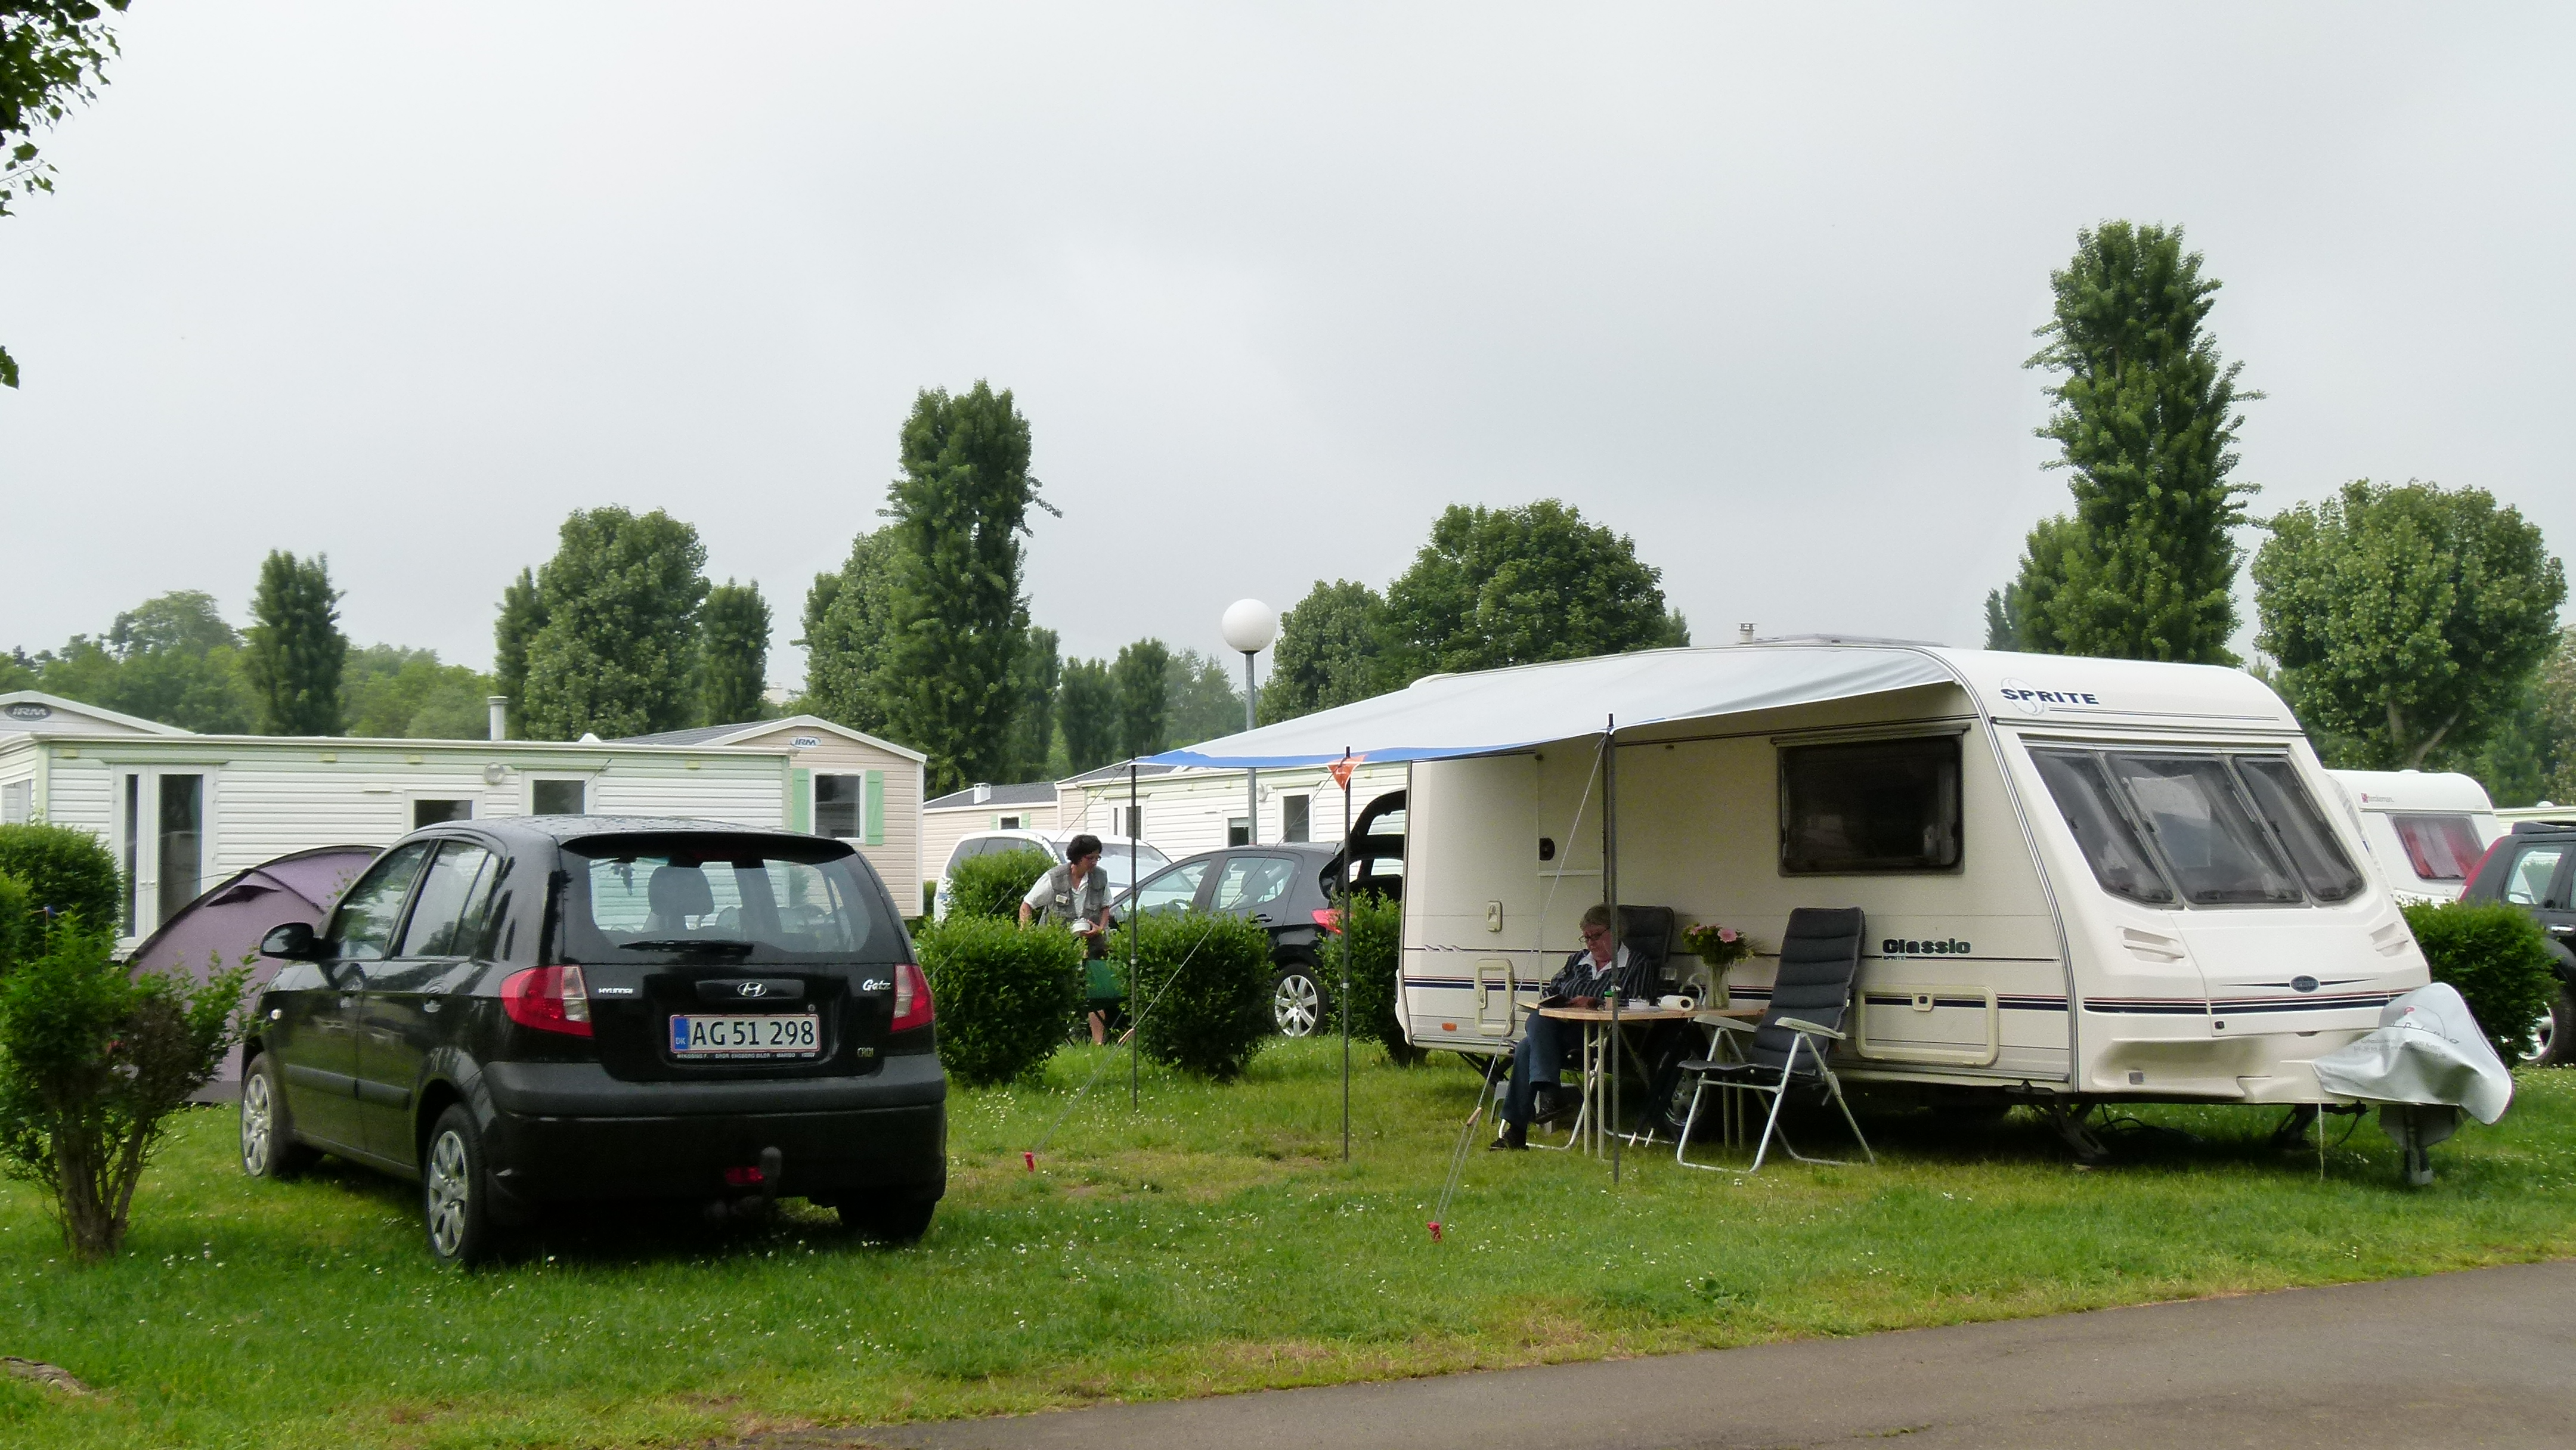 Camping International de Maisons Laffitte ligger i udkanten af Paris lige ned til Seinen. Der er en jernbanestation ikke langt fra campingpladsen. Så herfra tager det ca. 25 min til centrum af byen.